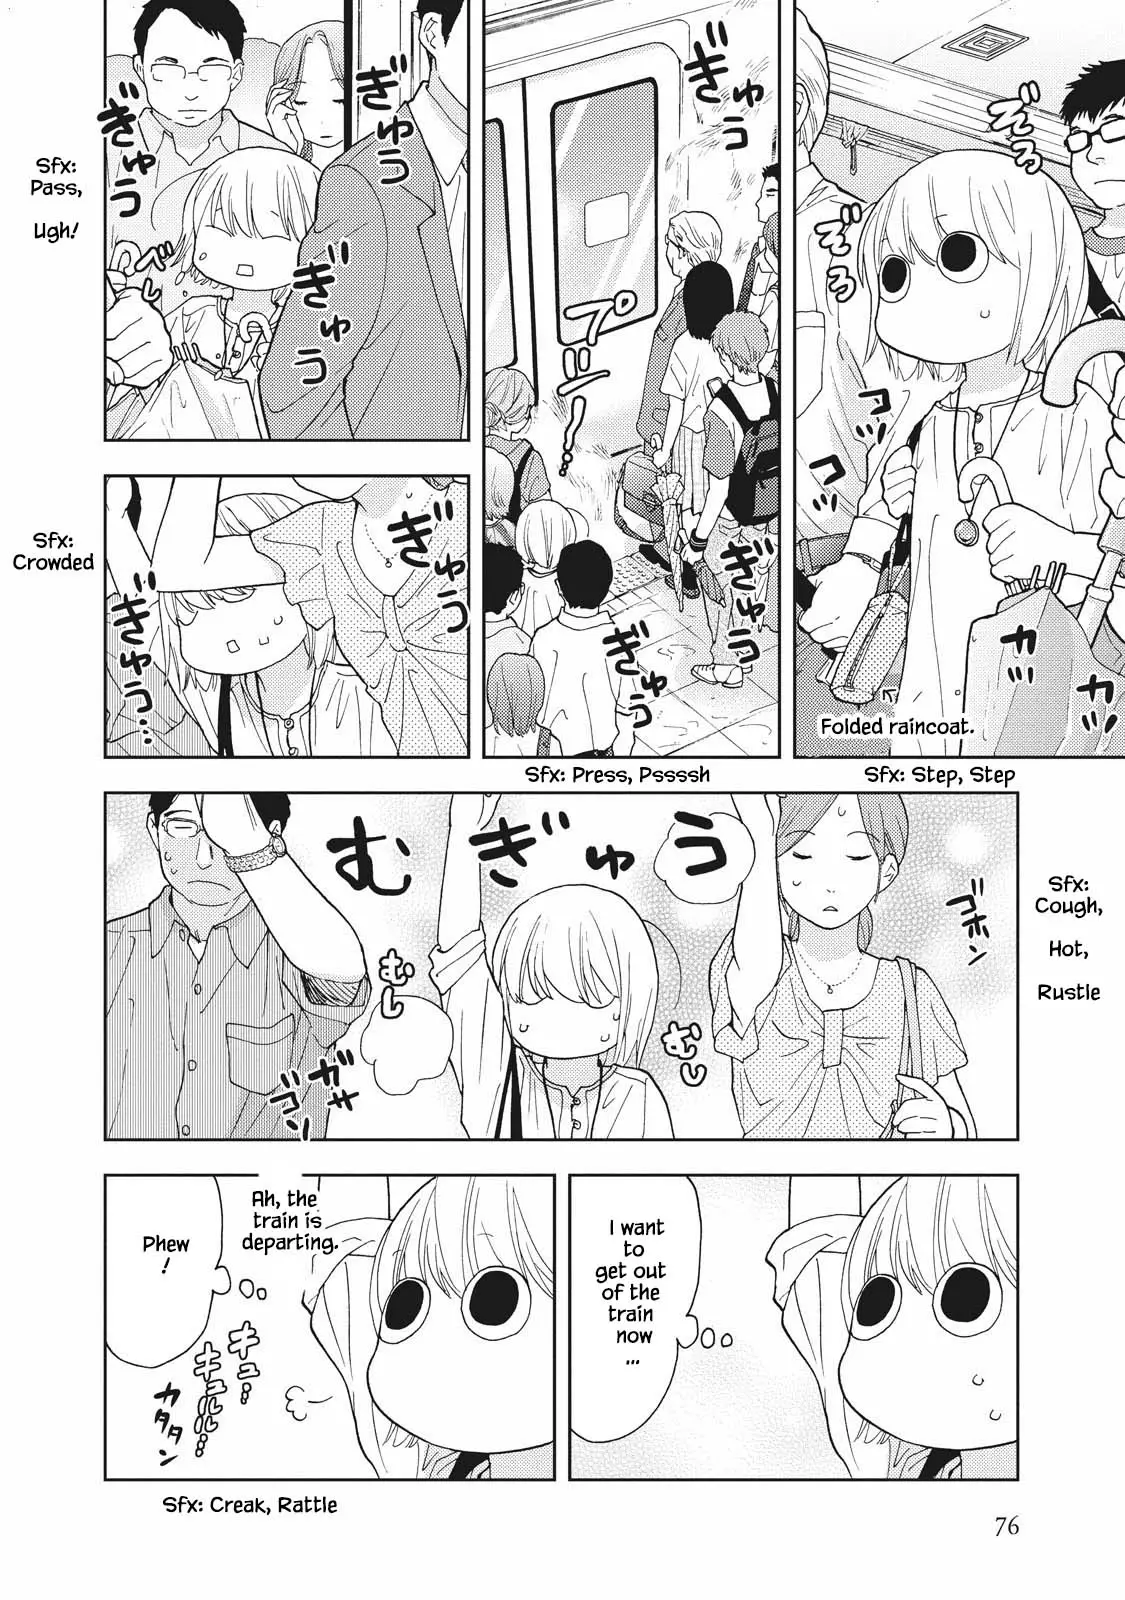 Takako-San - 7 page 4-3614ec7a